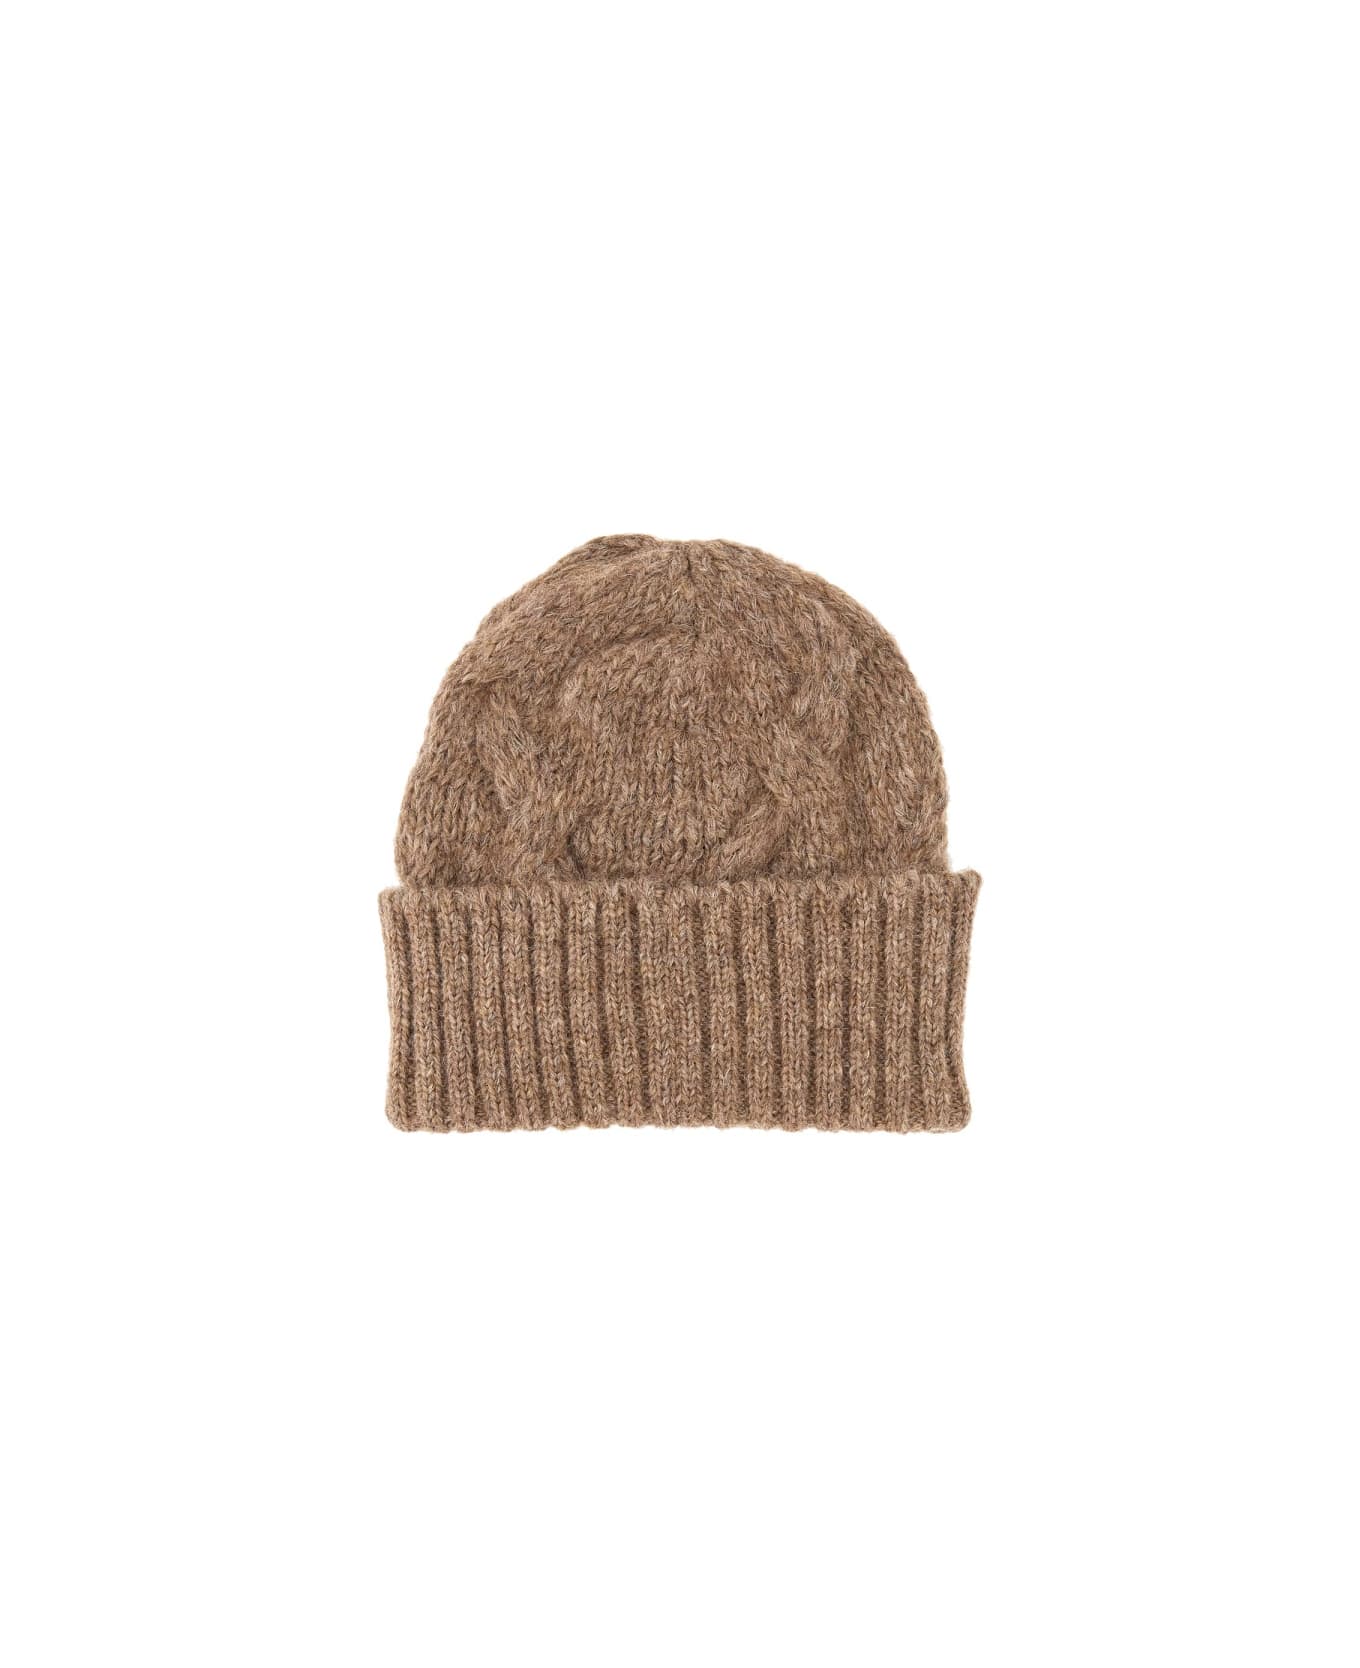 Séfr Knit Hat - BROWN 帽子